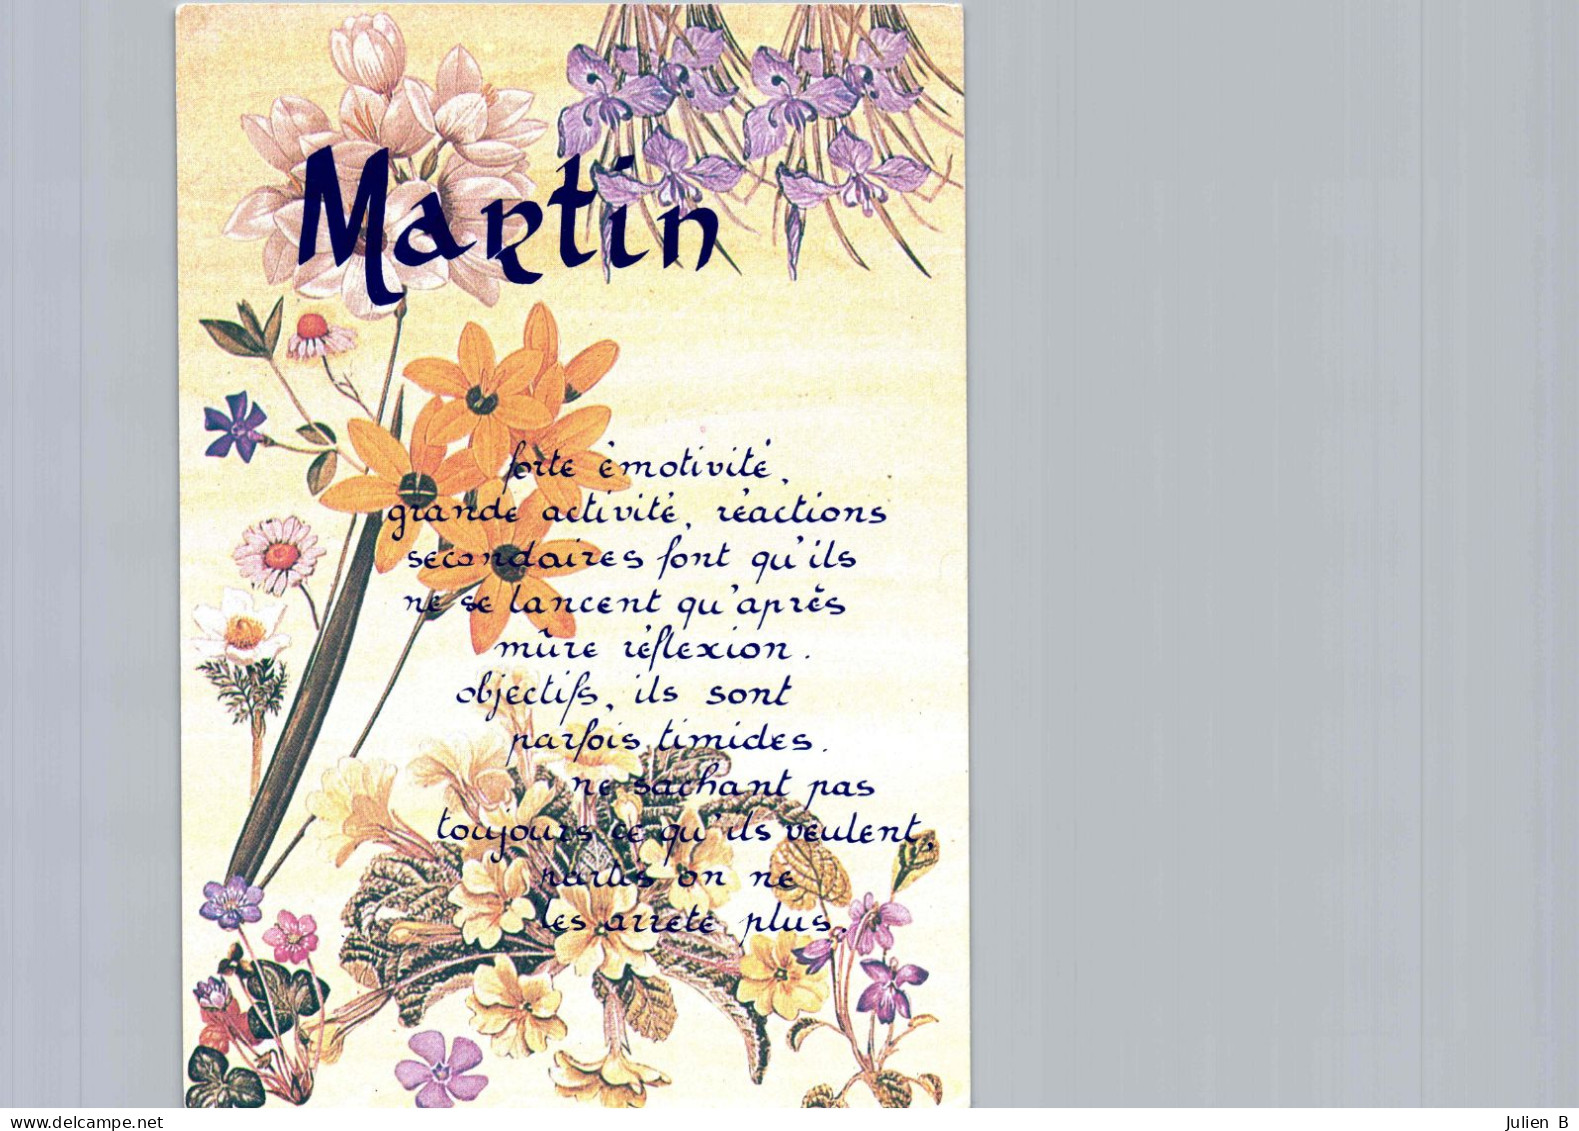 Martin, Edition ICDF - Nombres